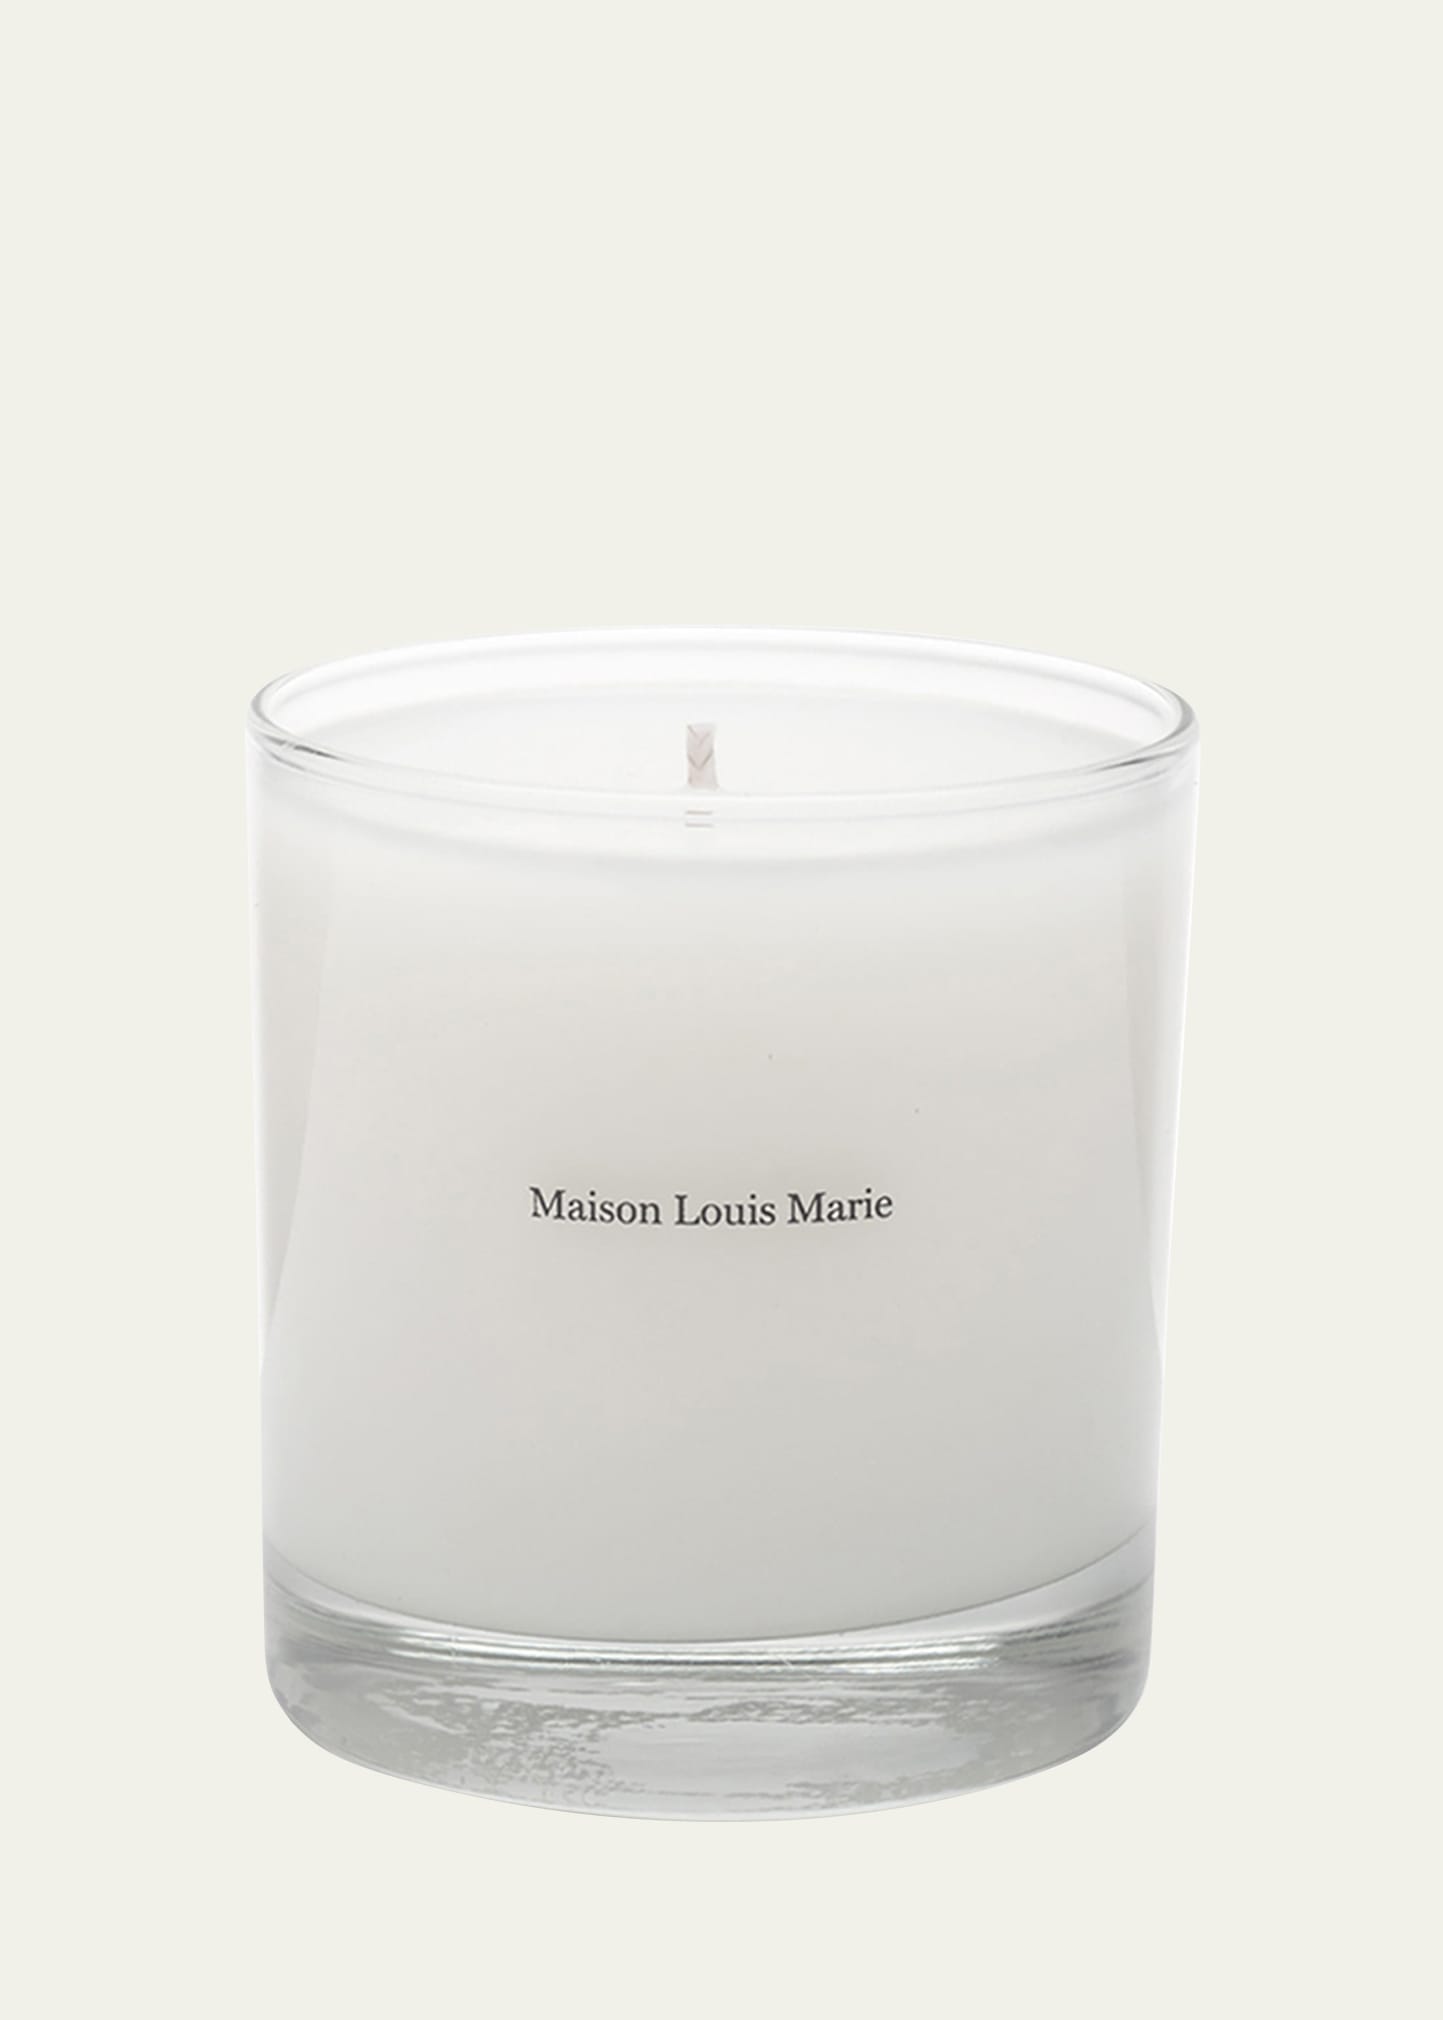 Maison Louis Marie 8.5 oz. No.04 Balincourt Candle